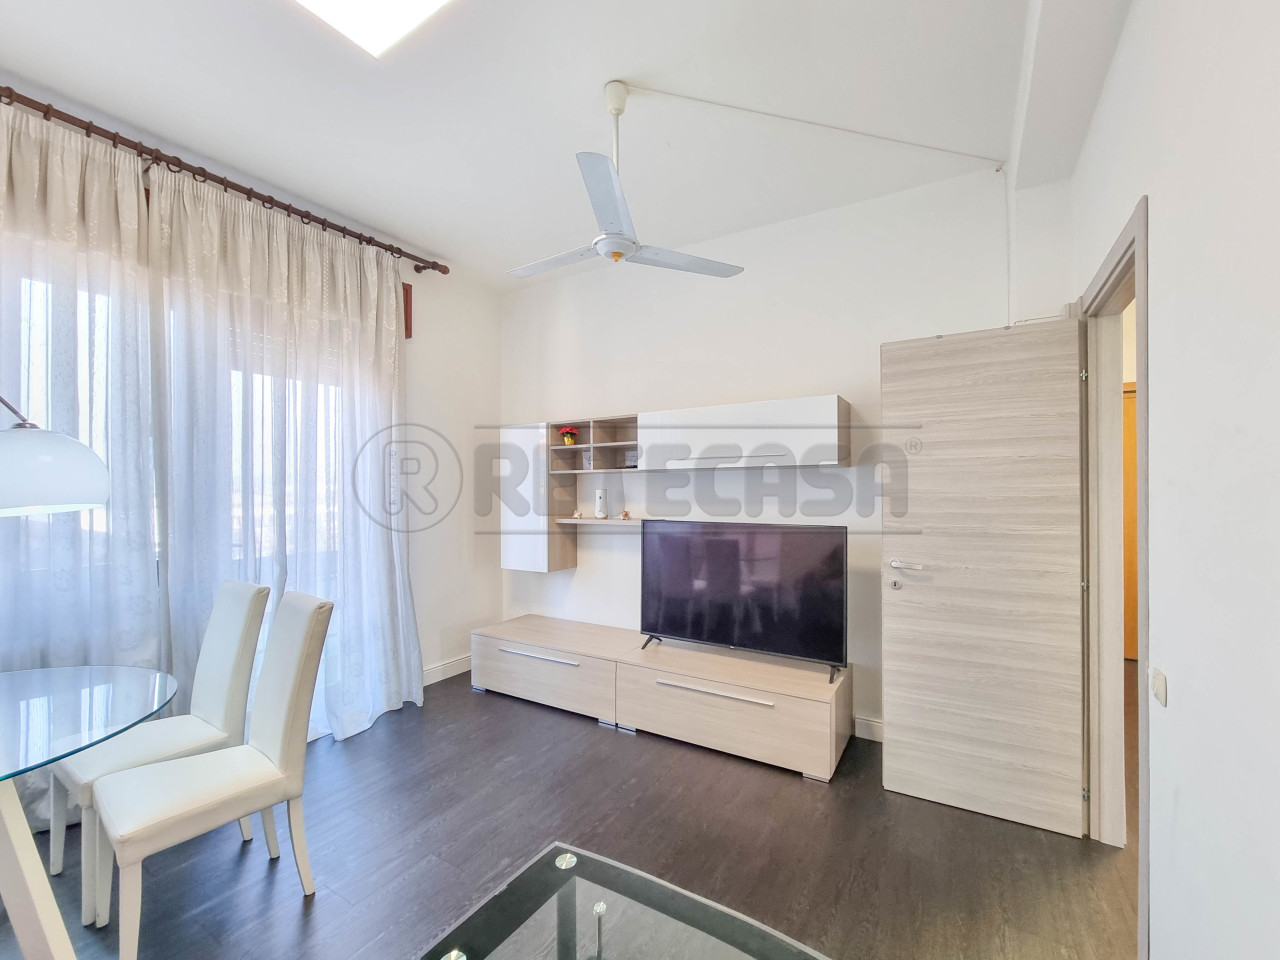 Appartamento in vendita a Creazzo, 4 locali, prezzo € 104.000 | PortaleAgenzieImmobiliari.it